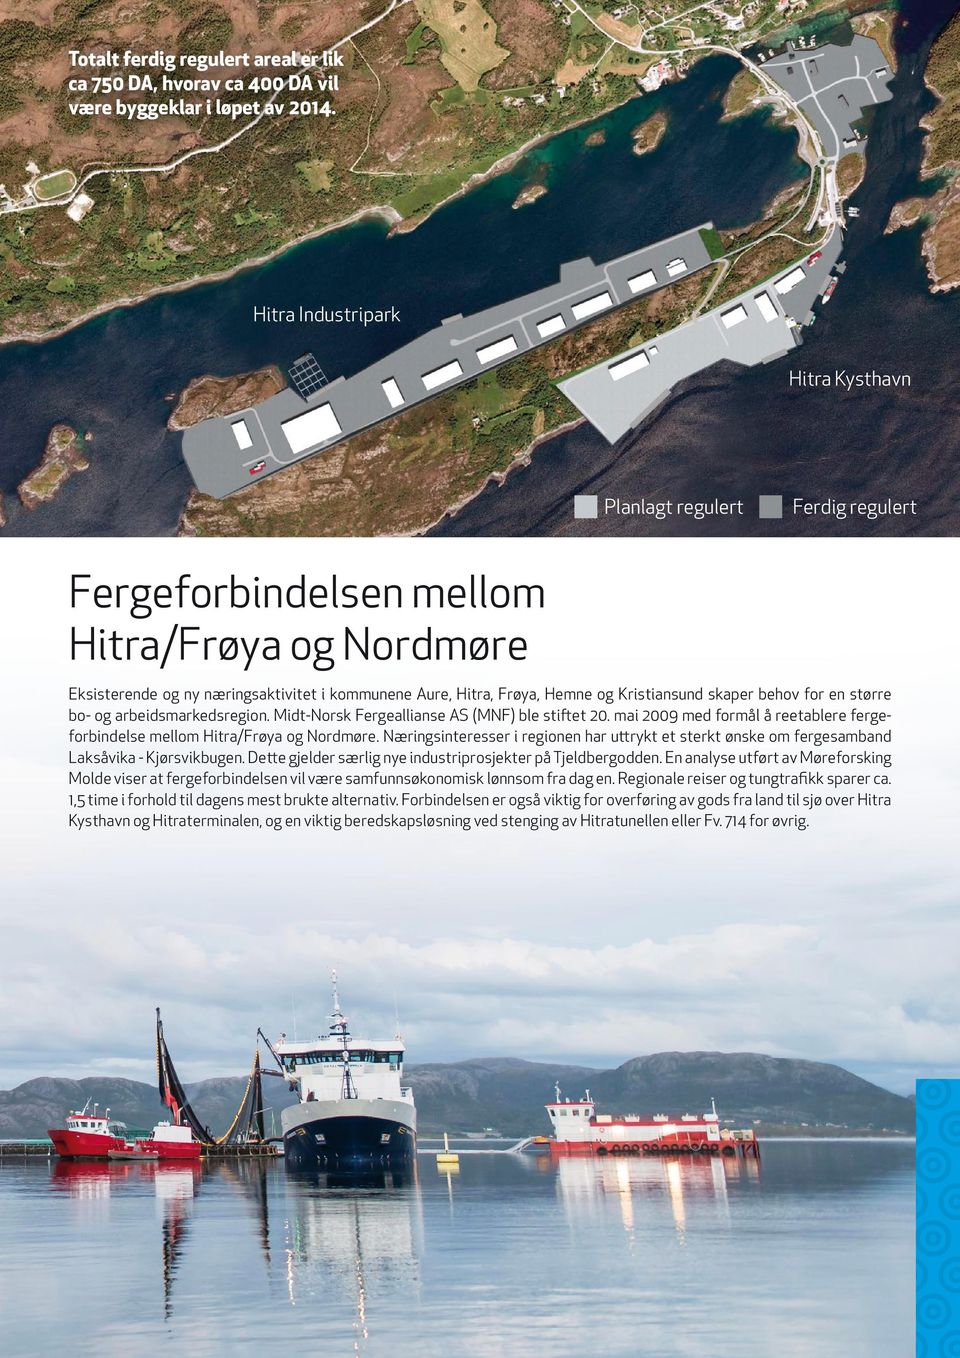 Kristiansund skaper behov for en større bo- og arbeidsmarkedsregion. Midt-Norsk Fergeallianse AS (MNF) ble stiftet 20. mai 2009 med formål å reetablere fergeforbindelse mellom Hitra/Frøya og Nordmøre.